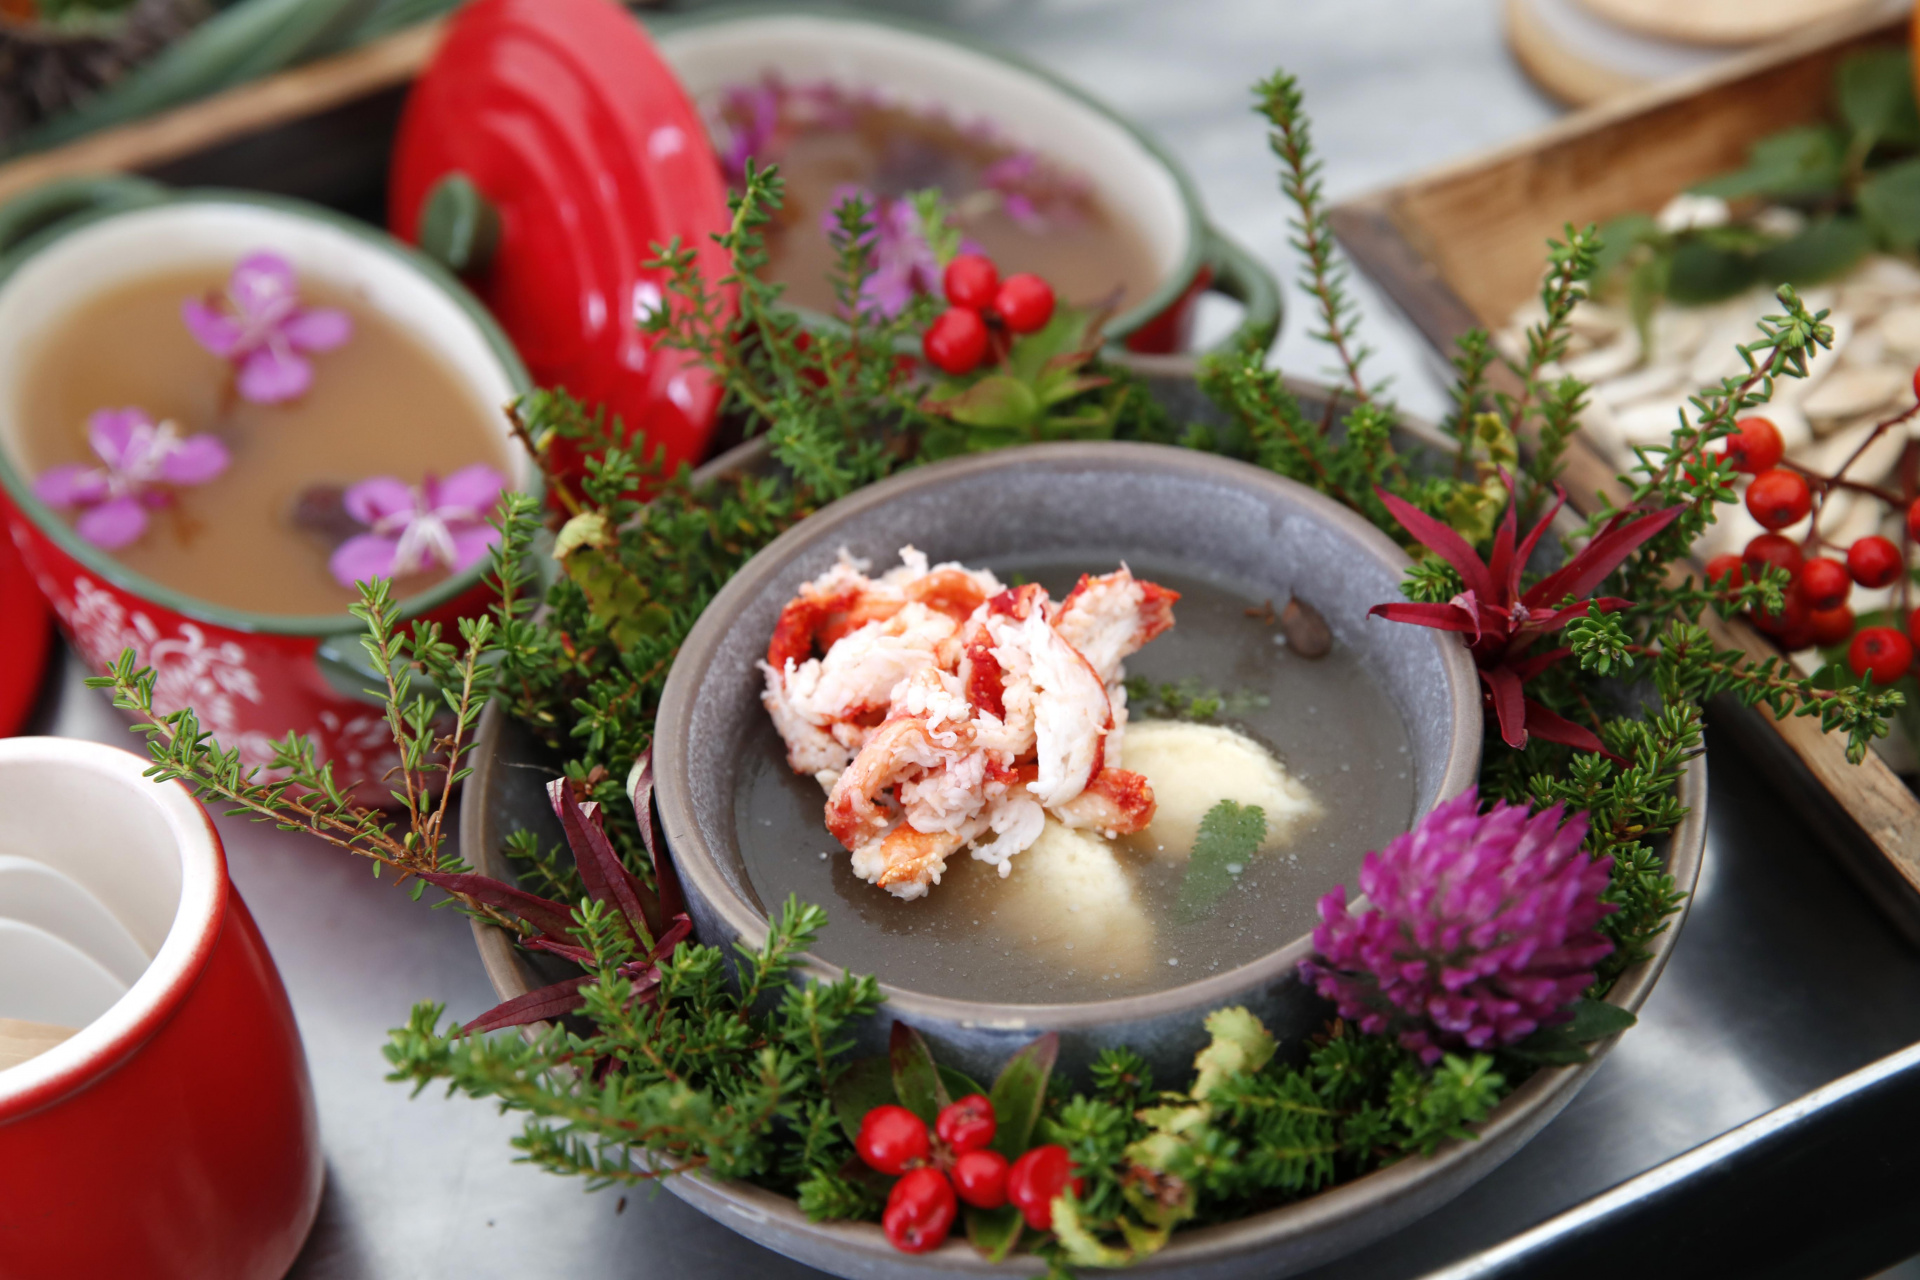 Блюда арктической кухни  в исполнении 25 рестораторов  представят в Мурманской области 